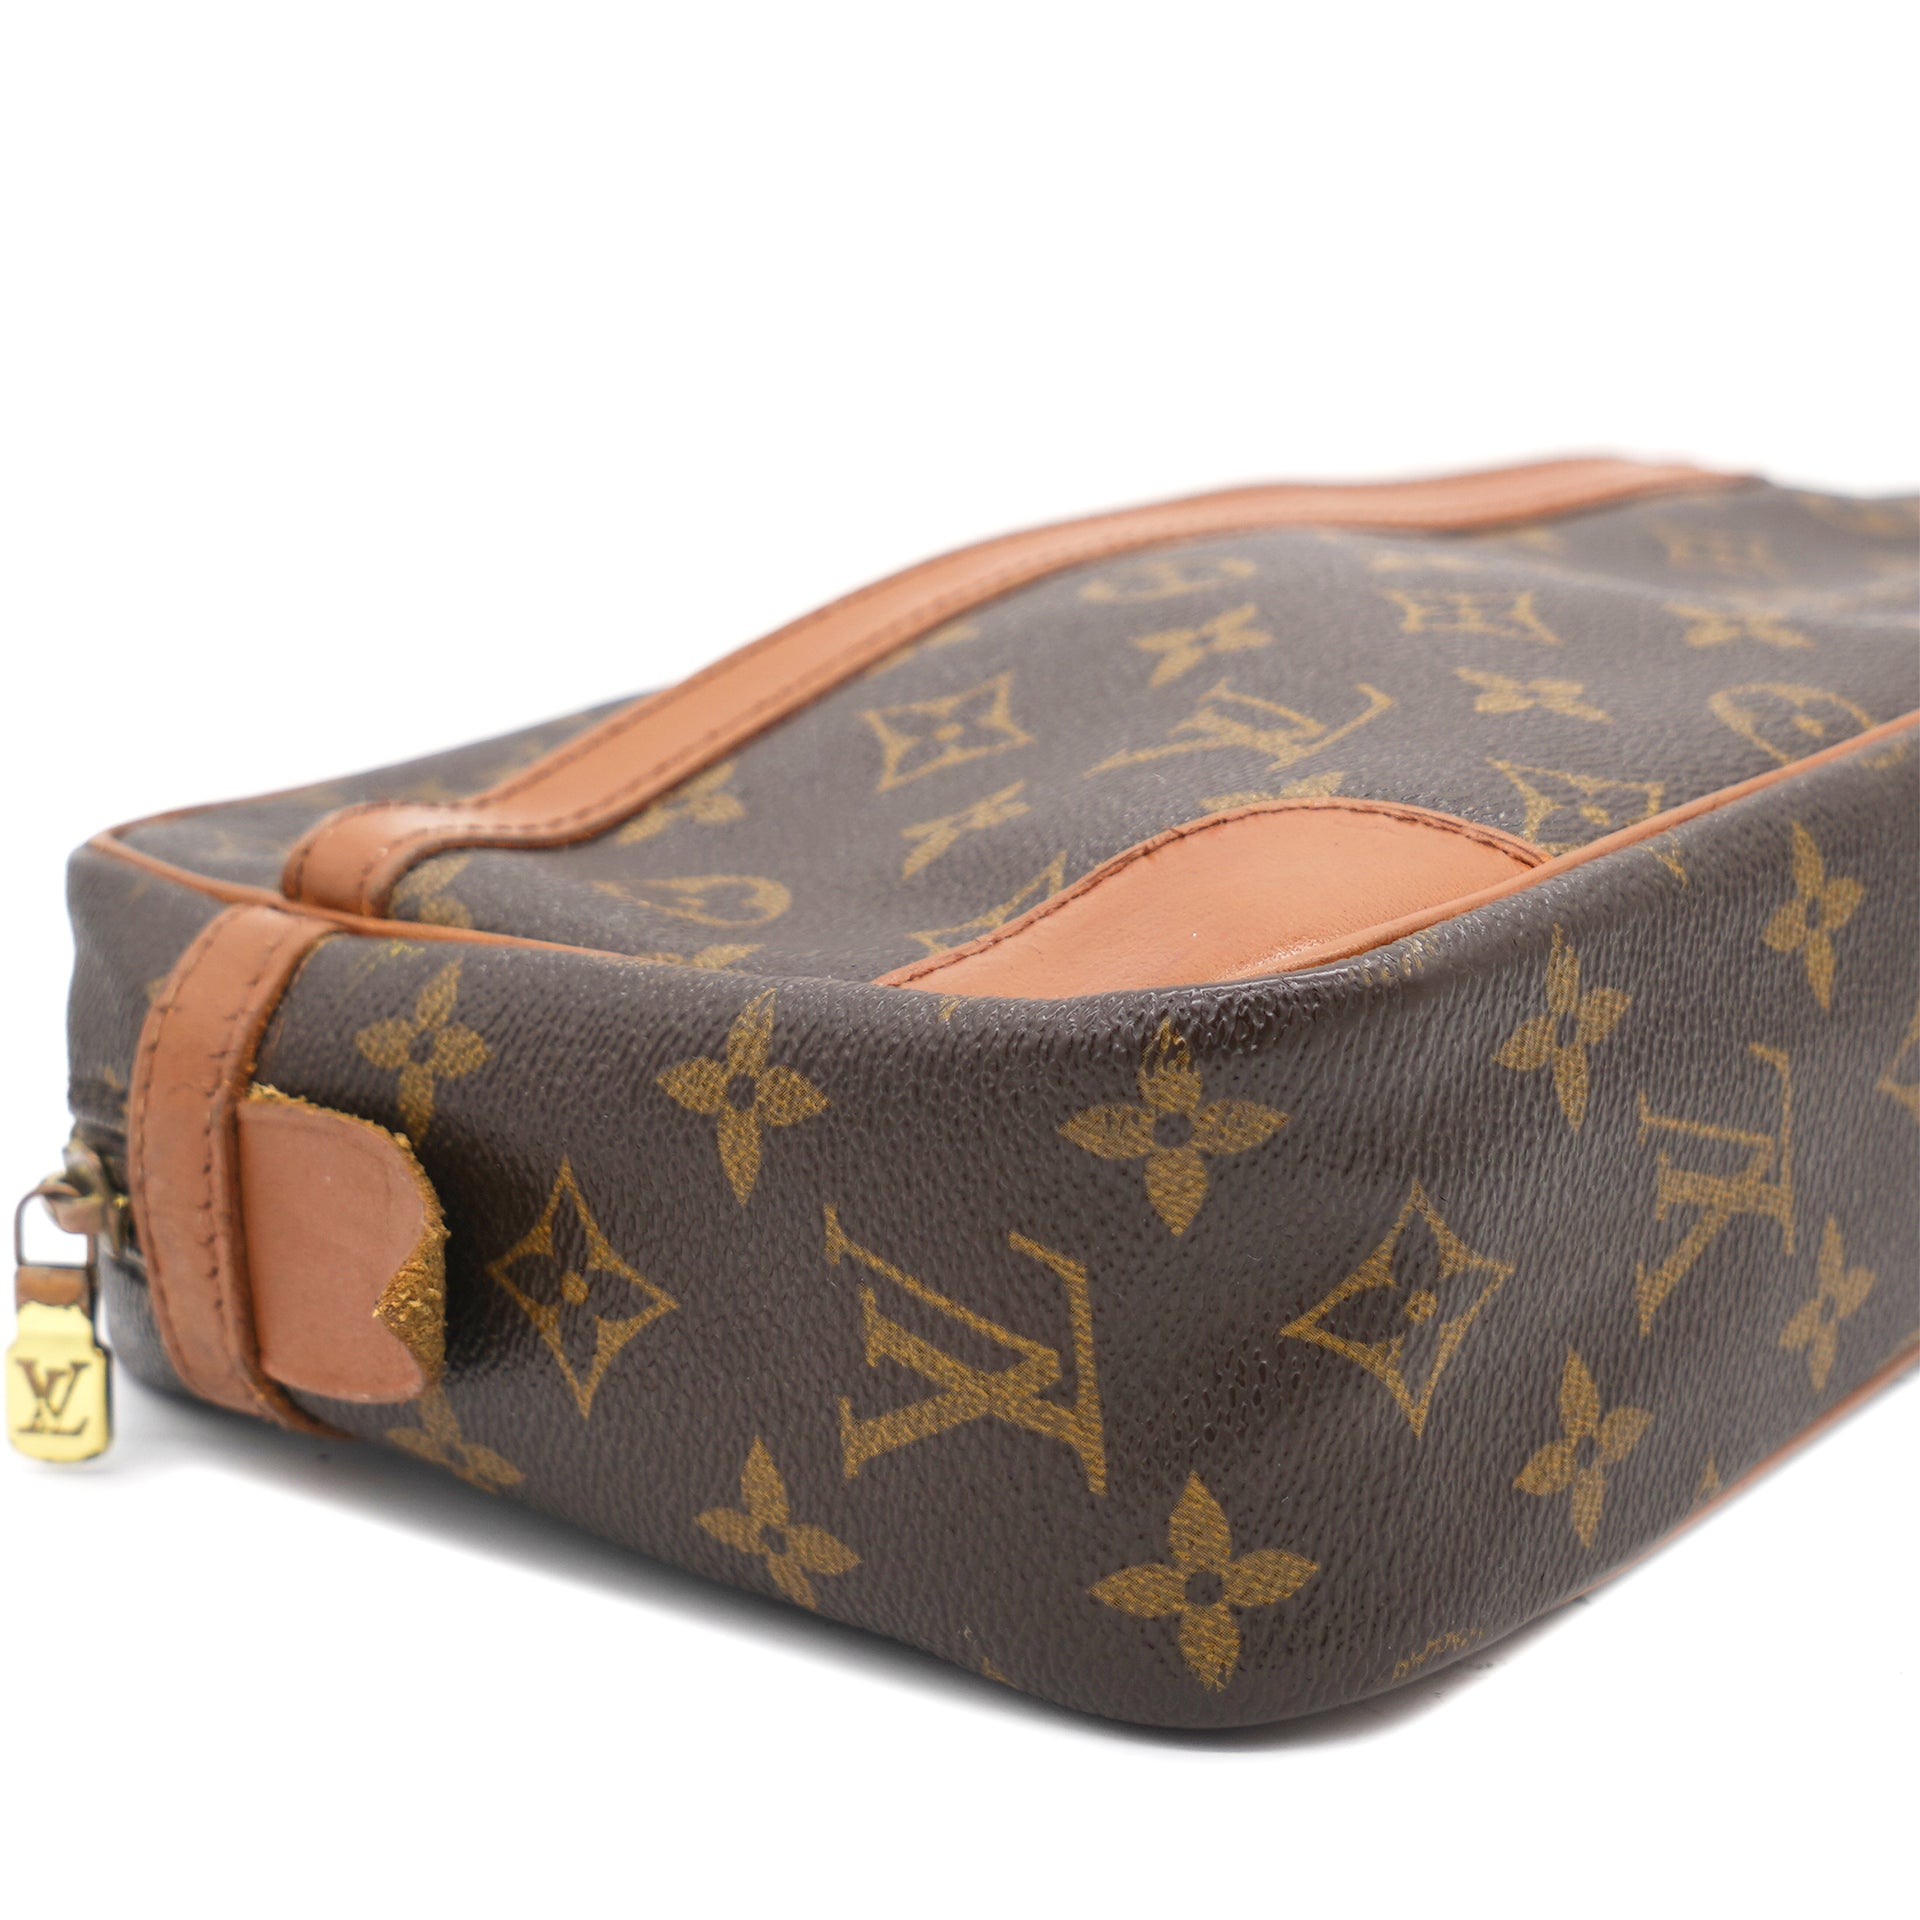 Louis Vuitton Compiegne 28 M51845 Monogram Canvas Clutch Bag Brown